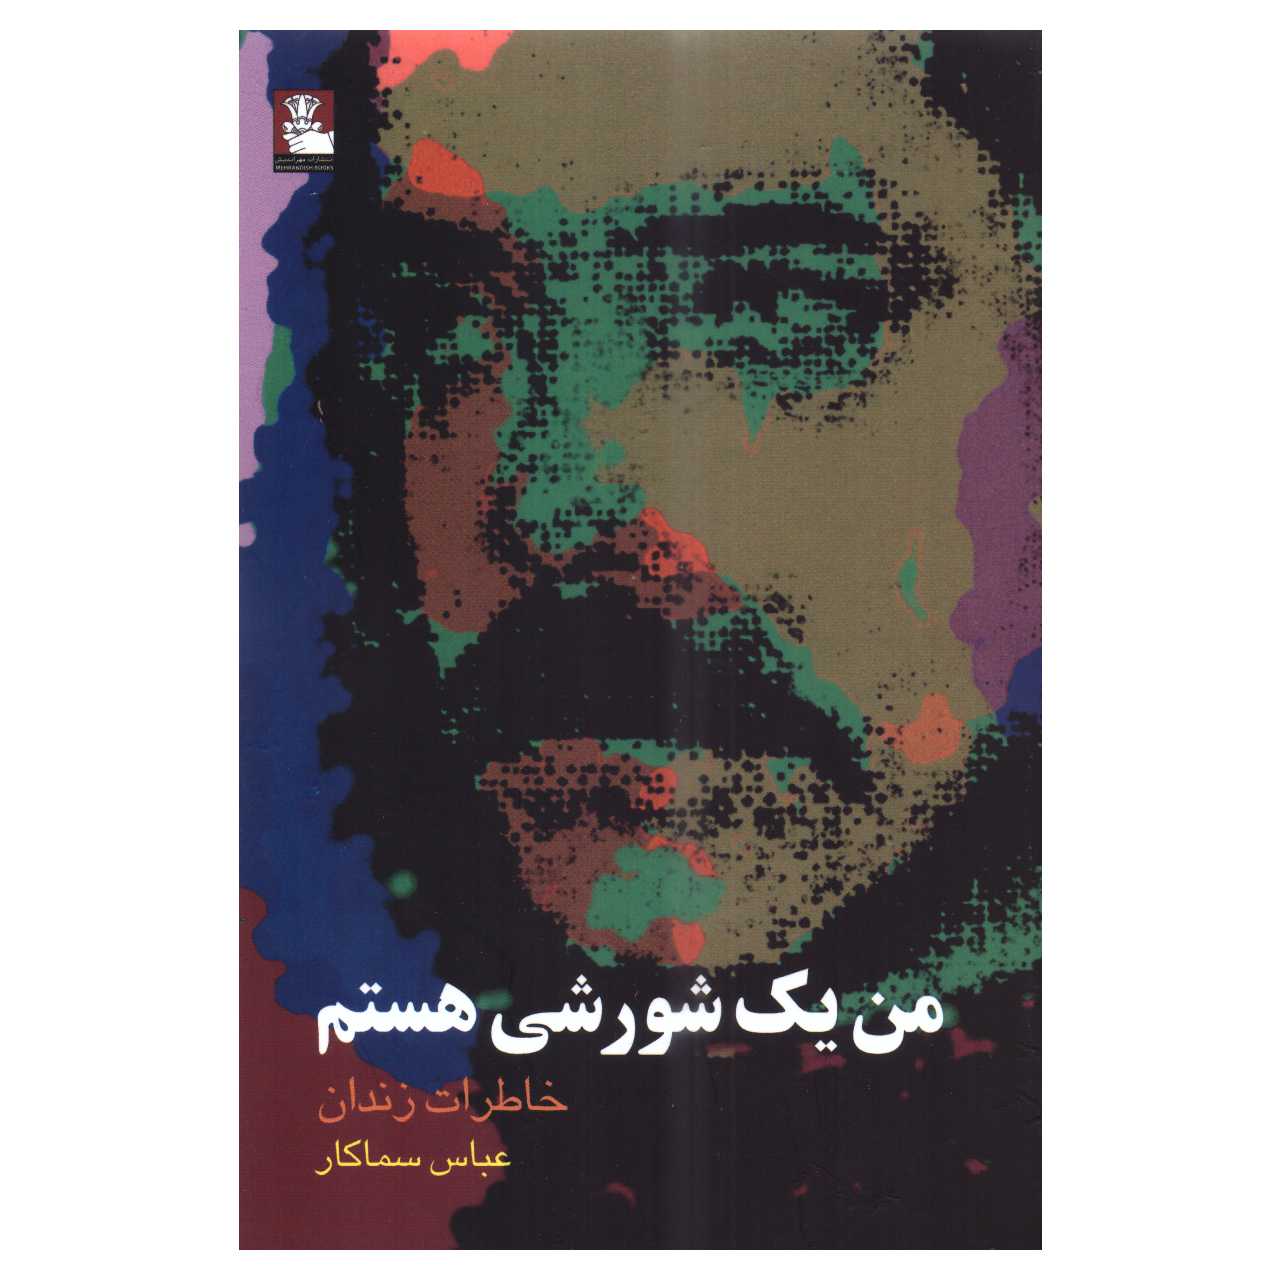 کتاب من یک شورشی هستم اثر عباس سماکار انتشارات مهراندیش